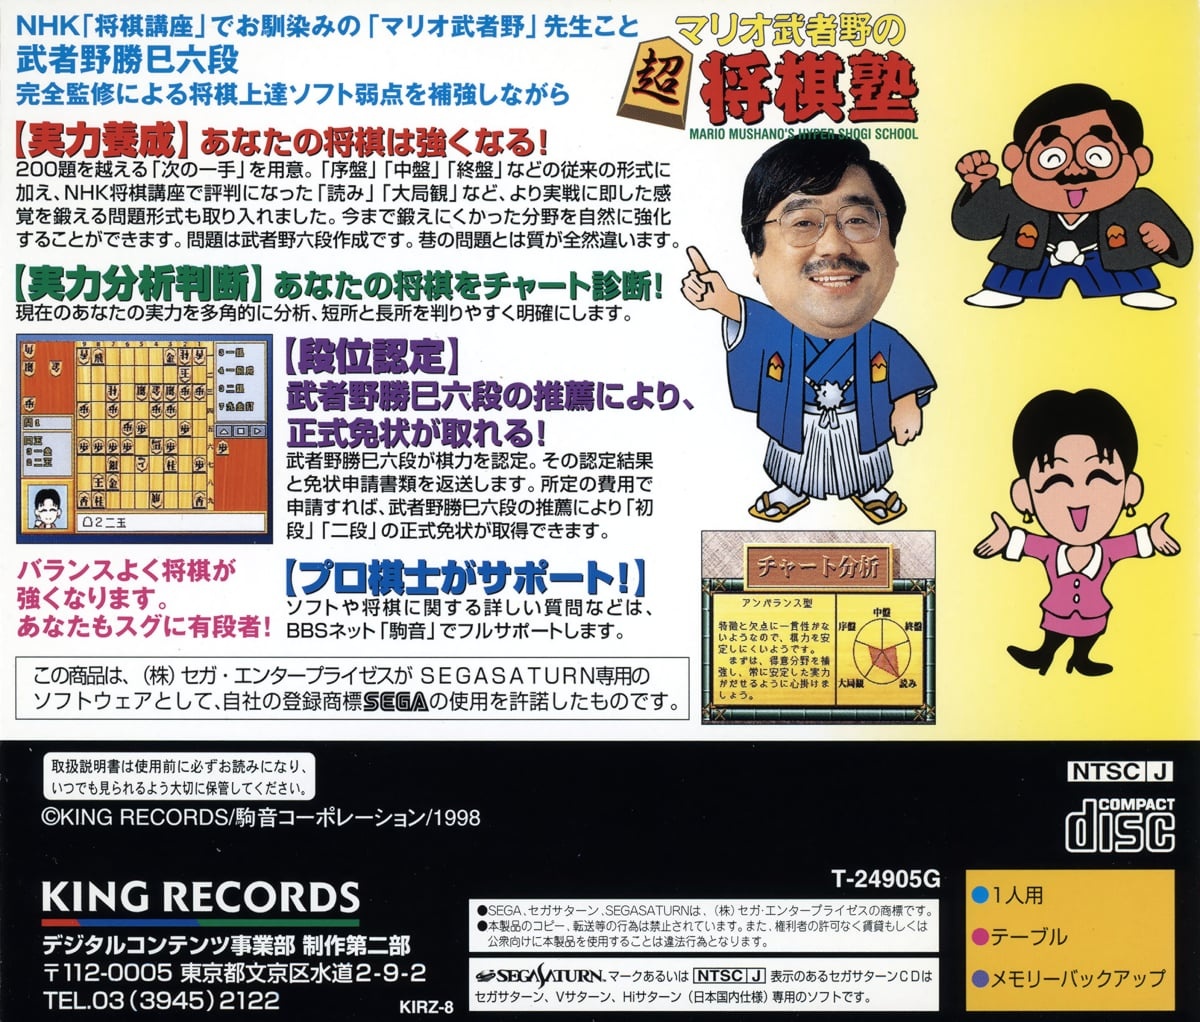 Capa do jogo Mario Mushano no Chou Shougi Juku